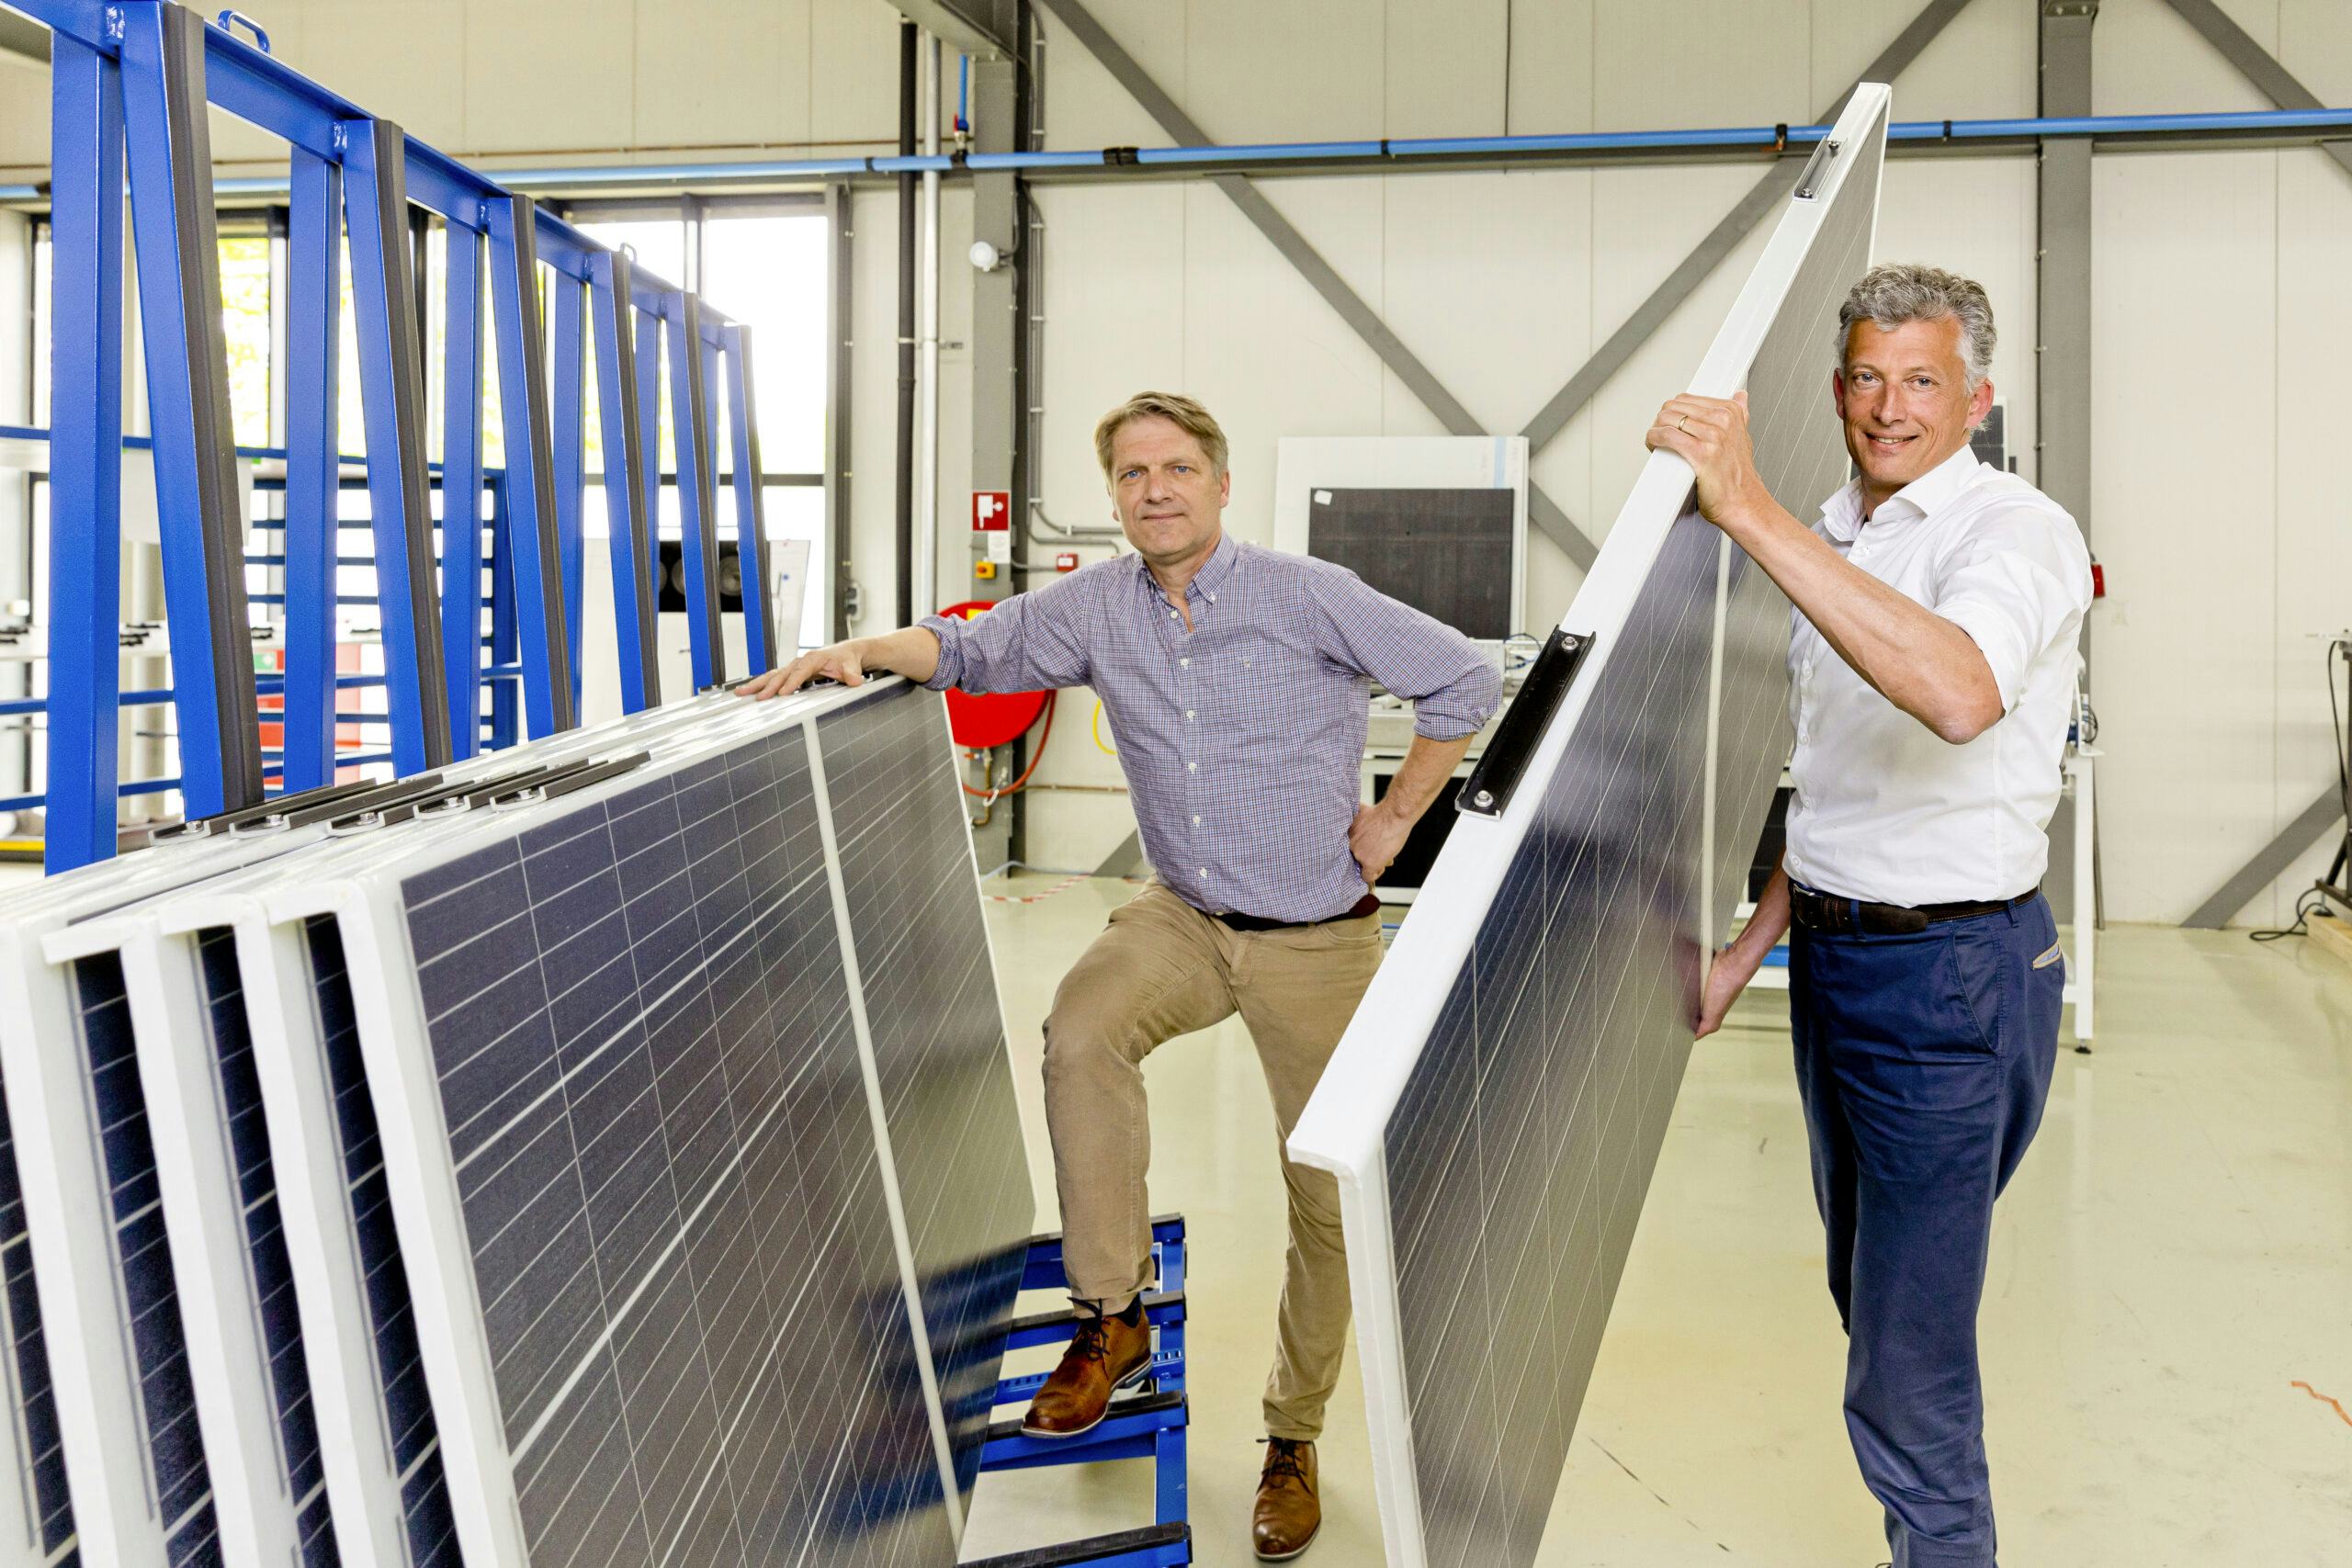 De lichtgewicht zonnepanelen van Solarge zijn volgens Jan Vesseur (links) en Huib van den Heuvel geschikt voor boerenschuren en bedrijfshallen die te licht zijn voor traditionele PV-panelen. Foto: Jeroen Kuit